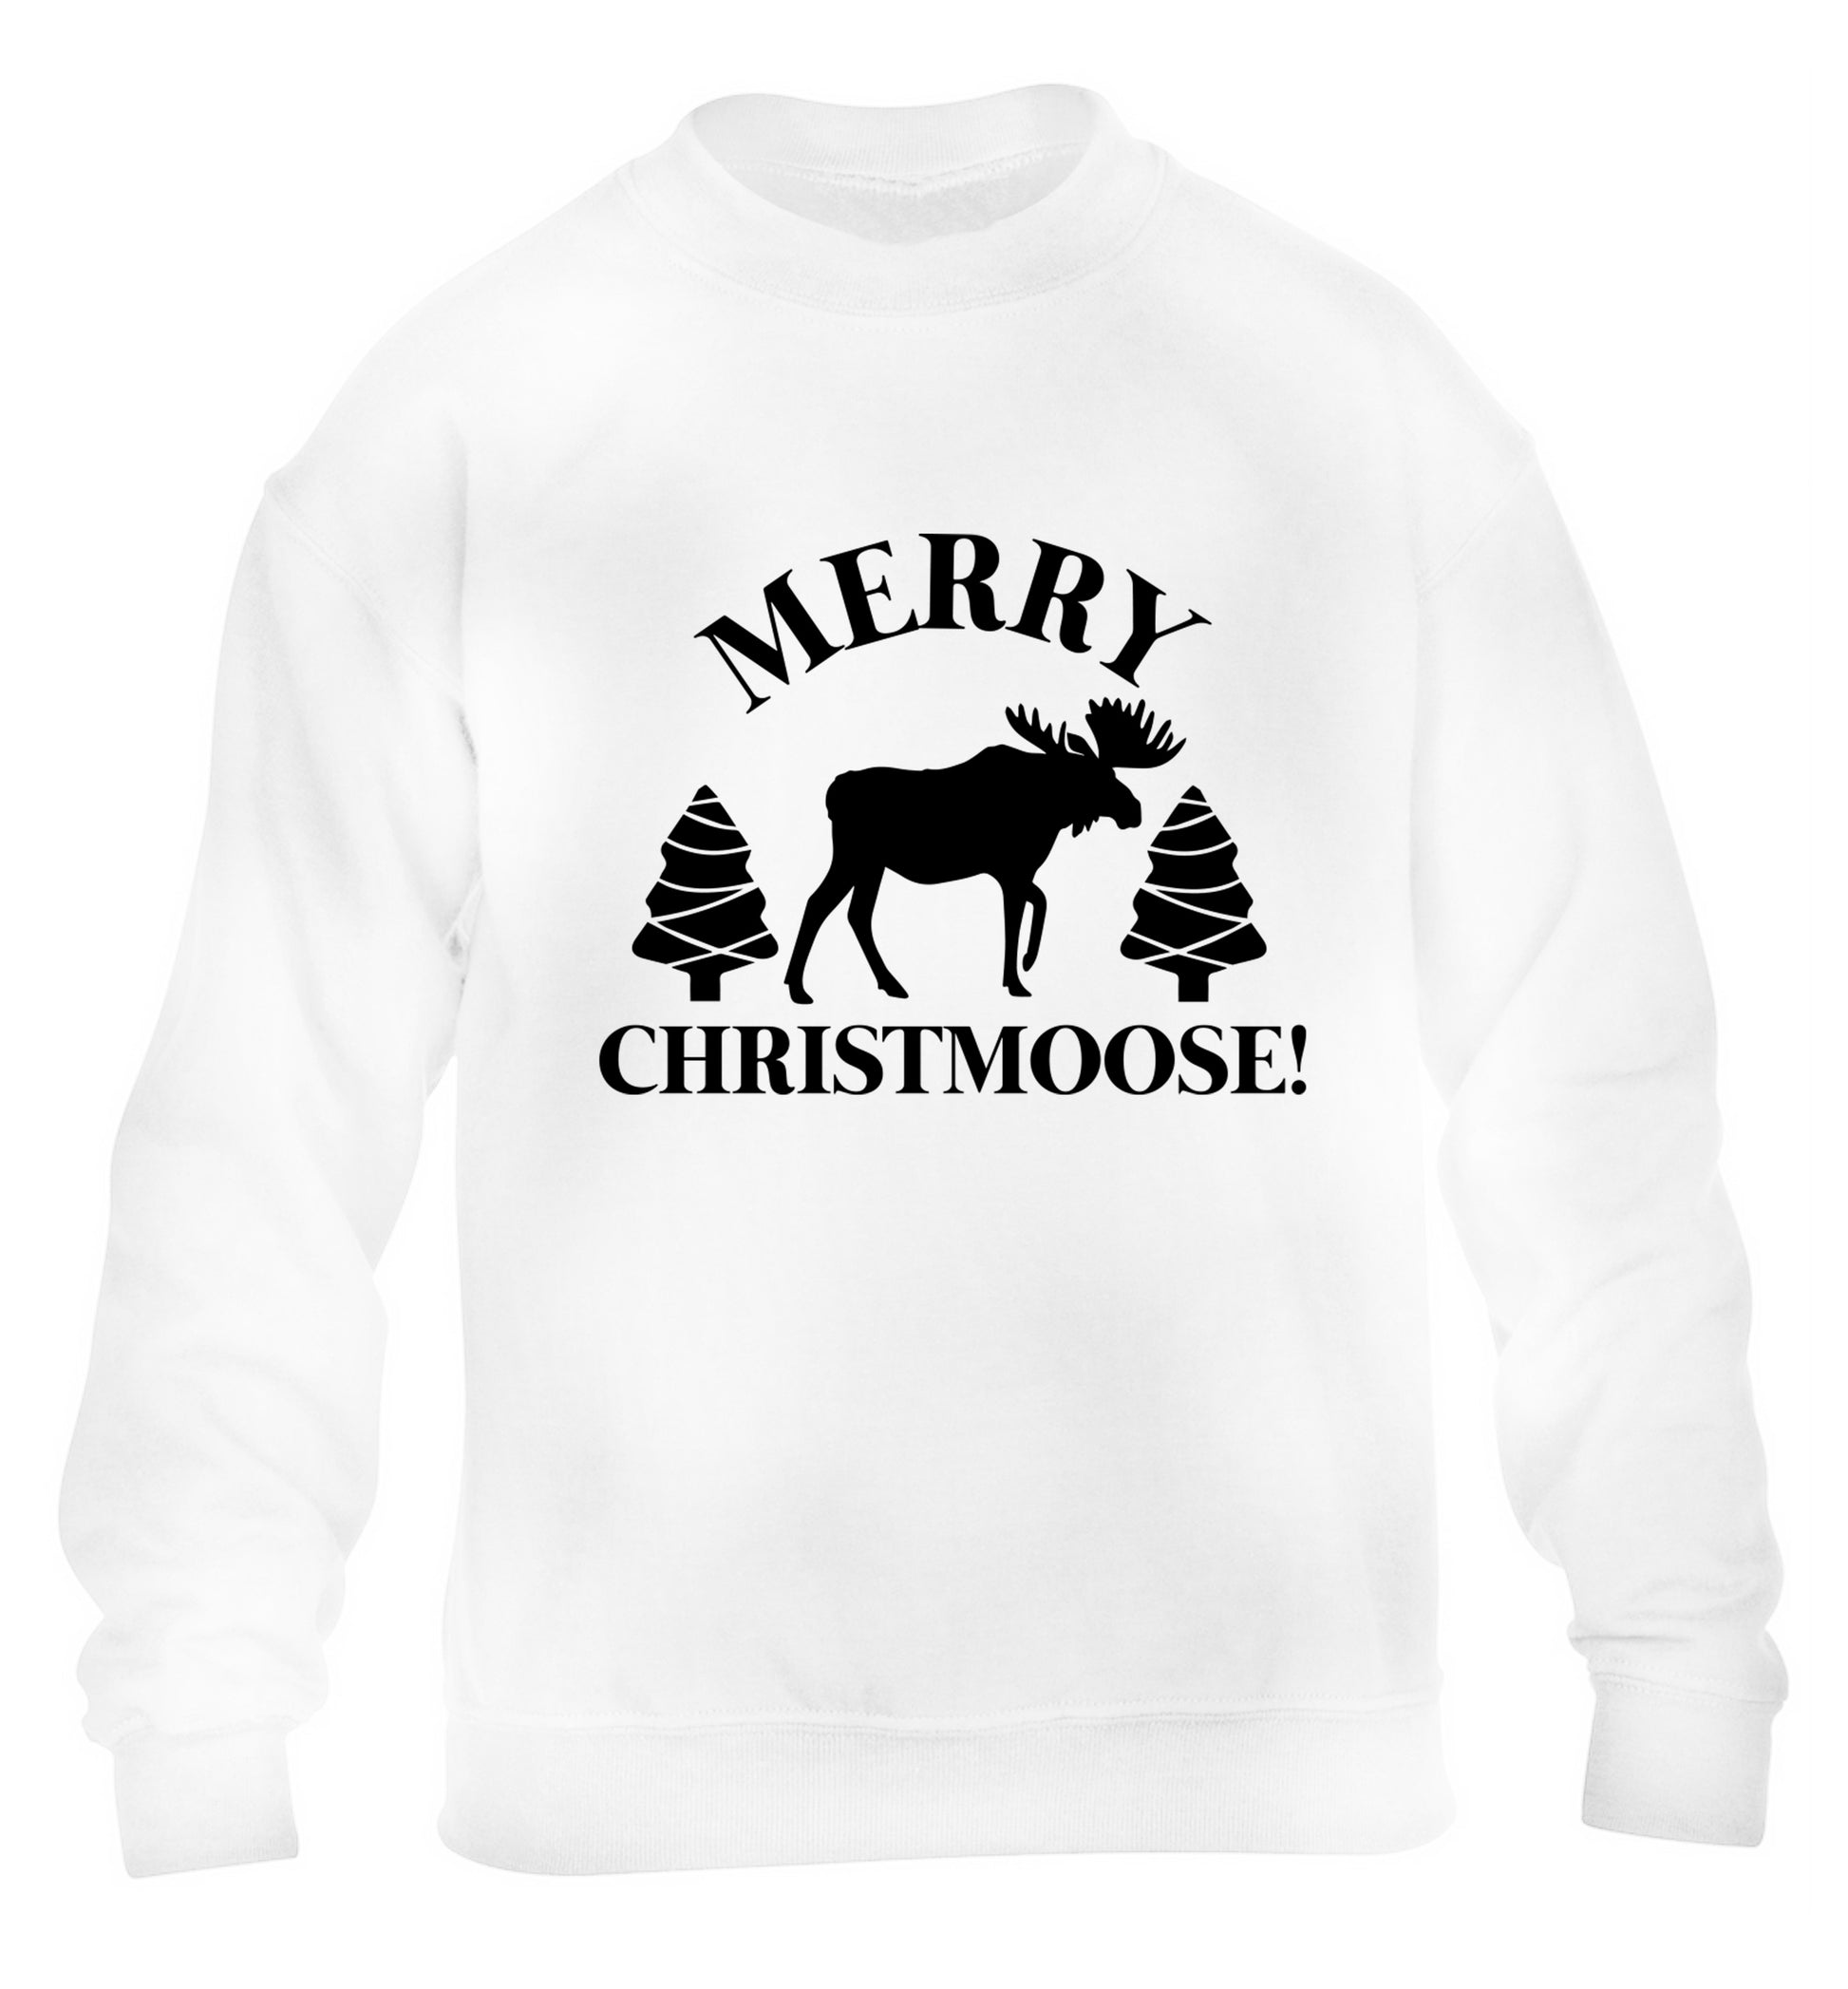 Merry Christmoose children's white sweater 12-14 Years